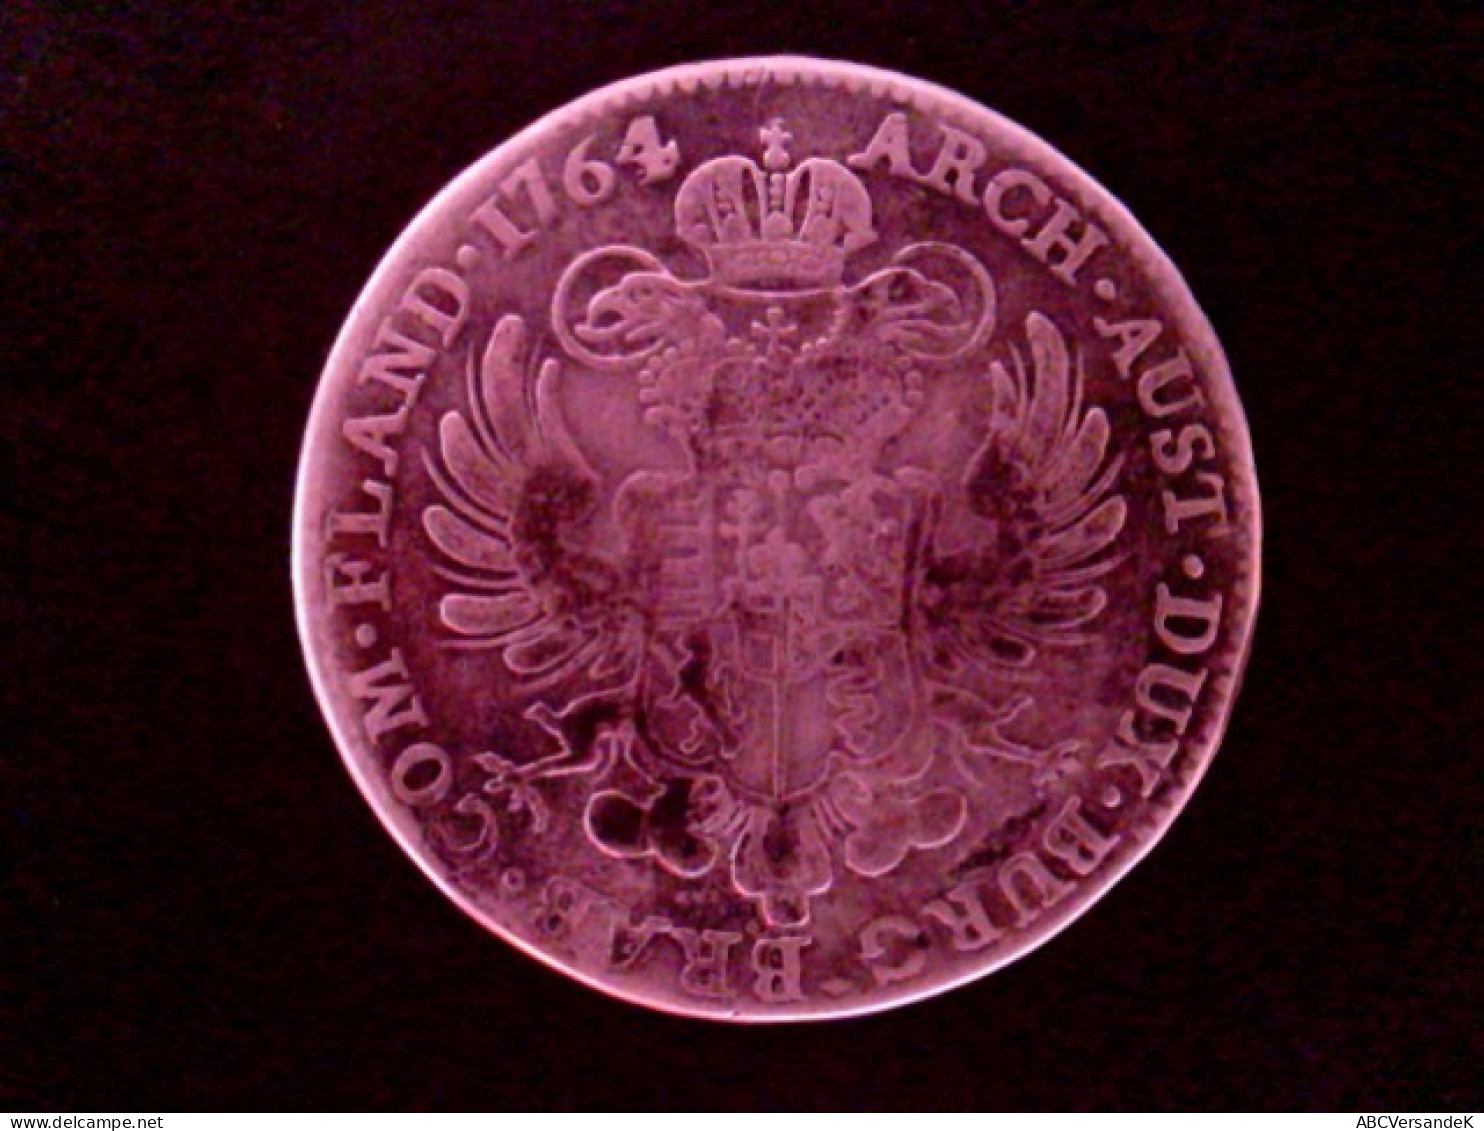 Münze/Medaille: 1 Kronentaler Maria Theresia, 1764, Habsburg, Österreichische Niederlande - Numismatik